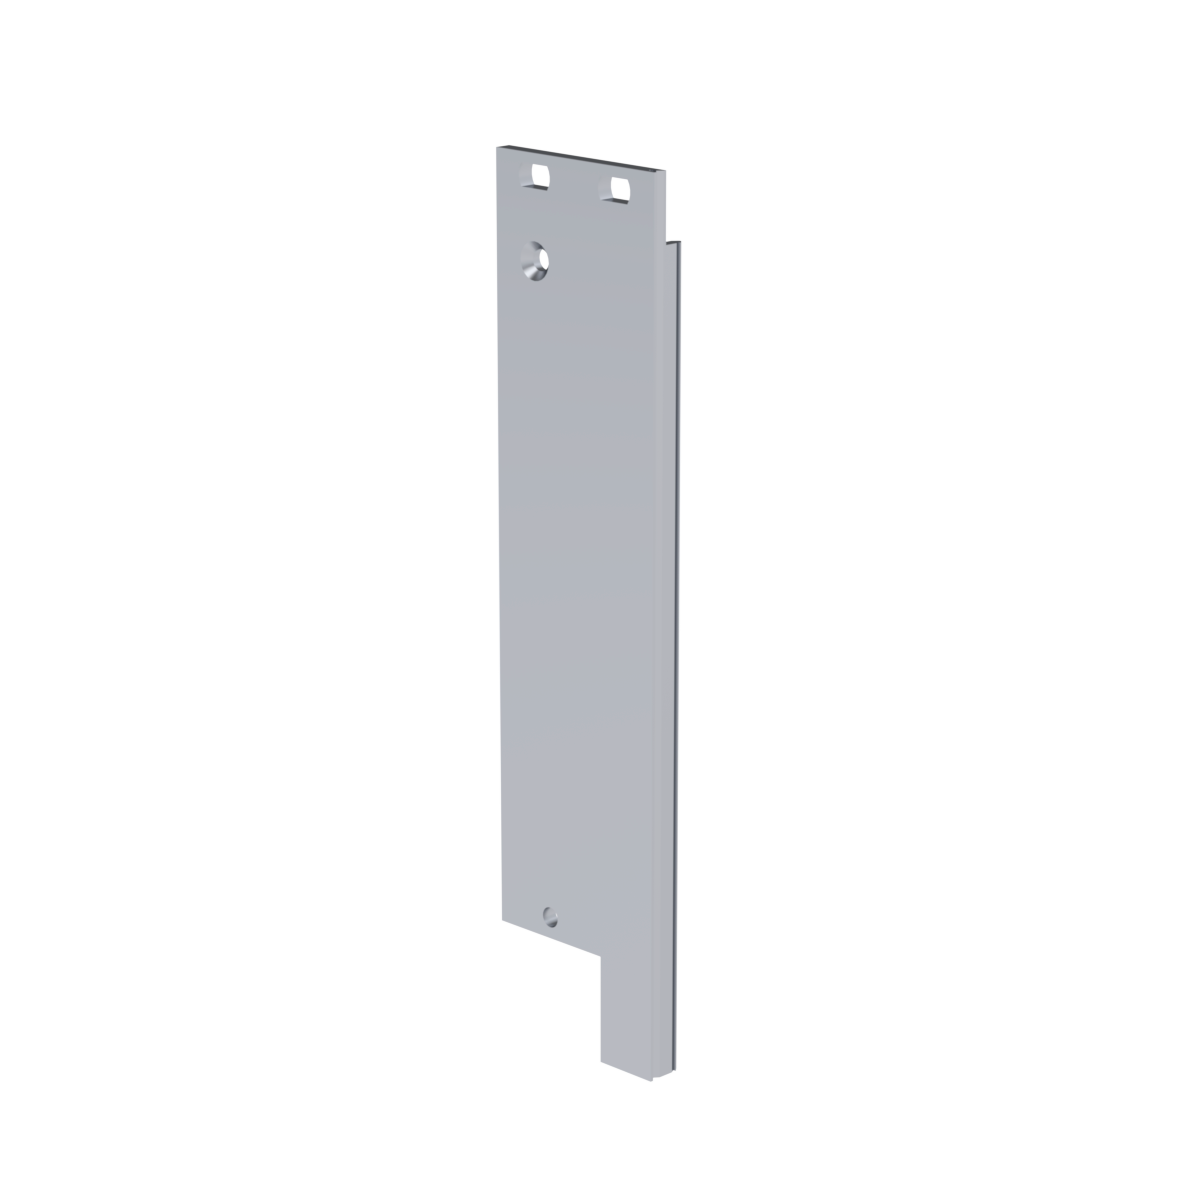 Лицевая панель U-образная 3U5HP под инжектор-экстрактор тип V-1 низ